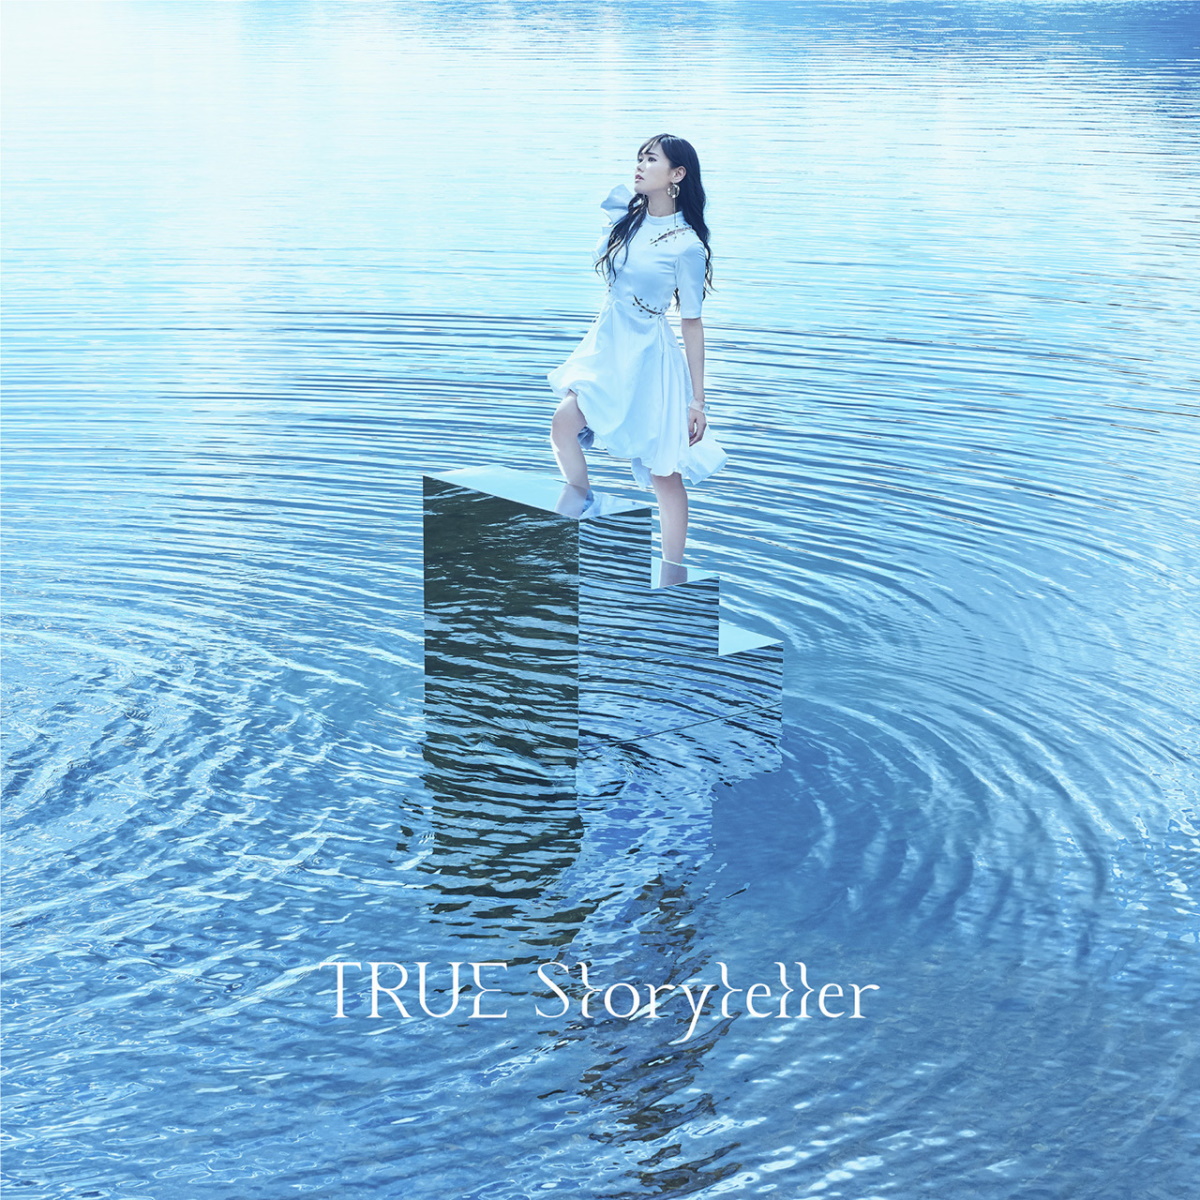 『TRUE - Storyteller』収録の『Storyteller』ジャケット